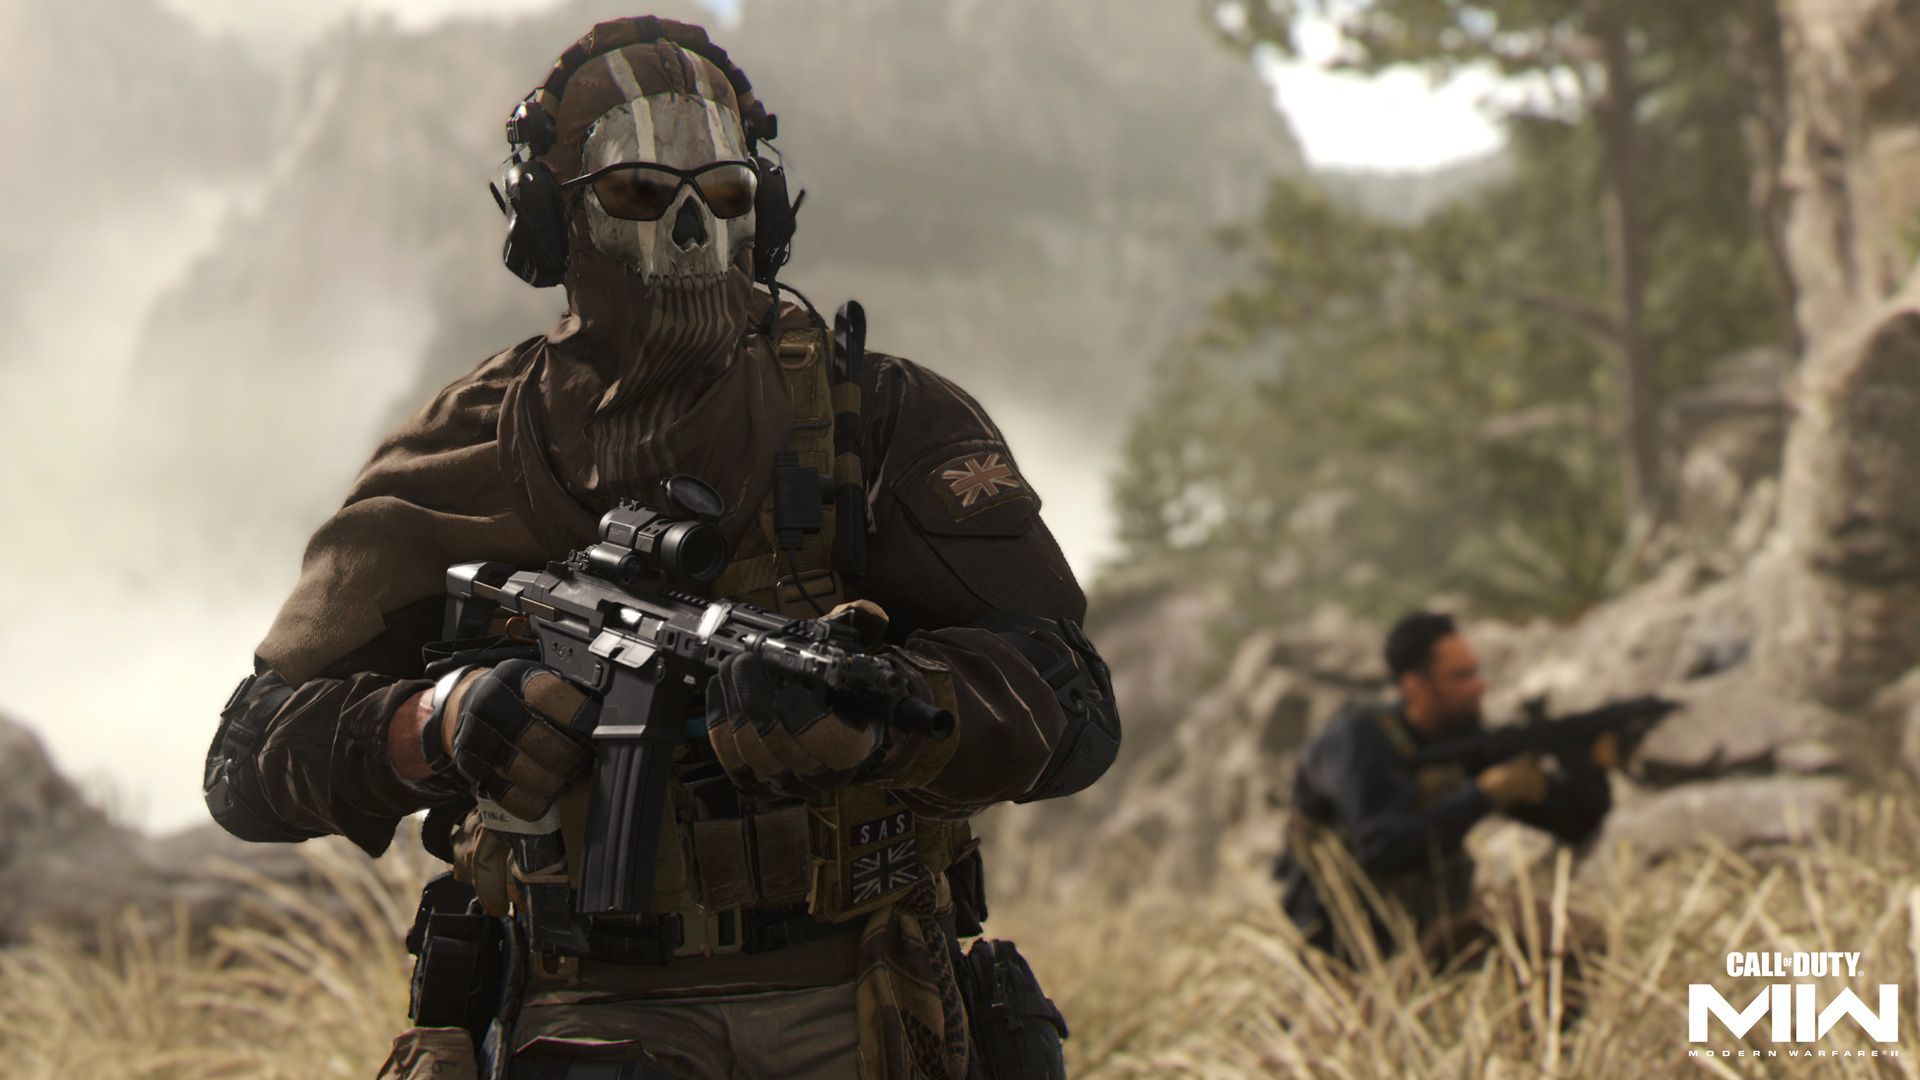 Call of Duty Modern Warfare 2 Beta Guide: Soldiers in Wheatfield